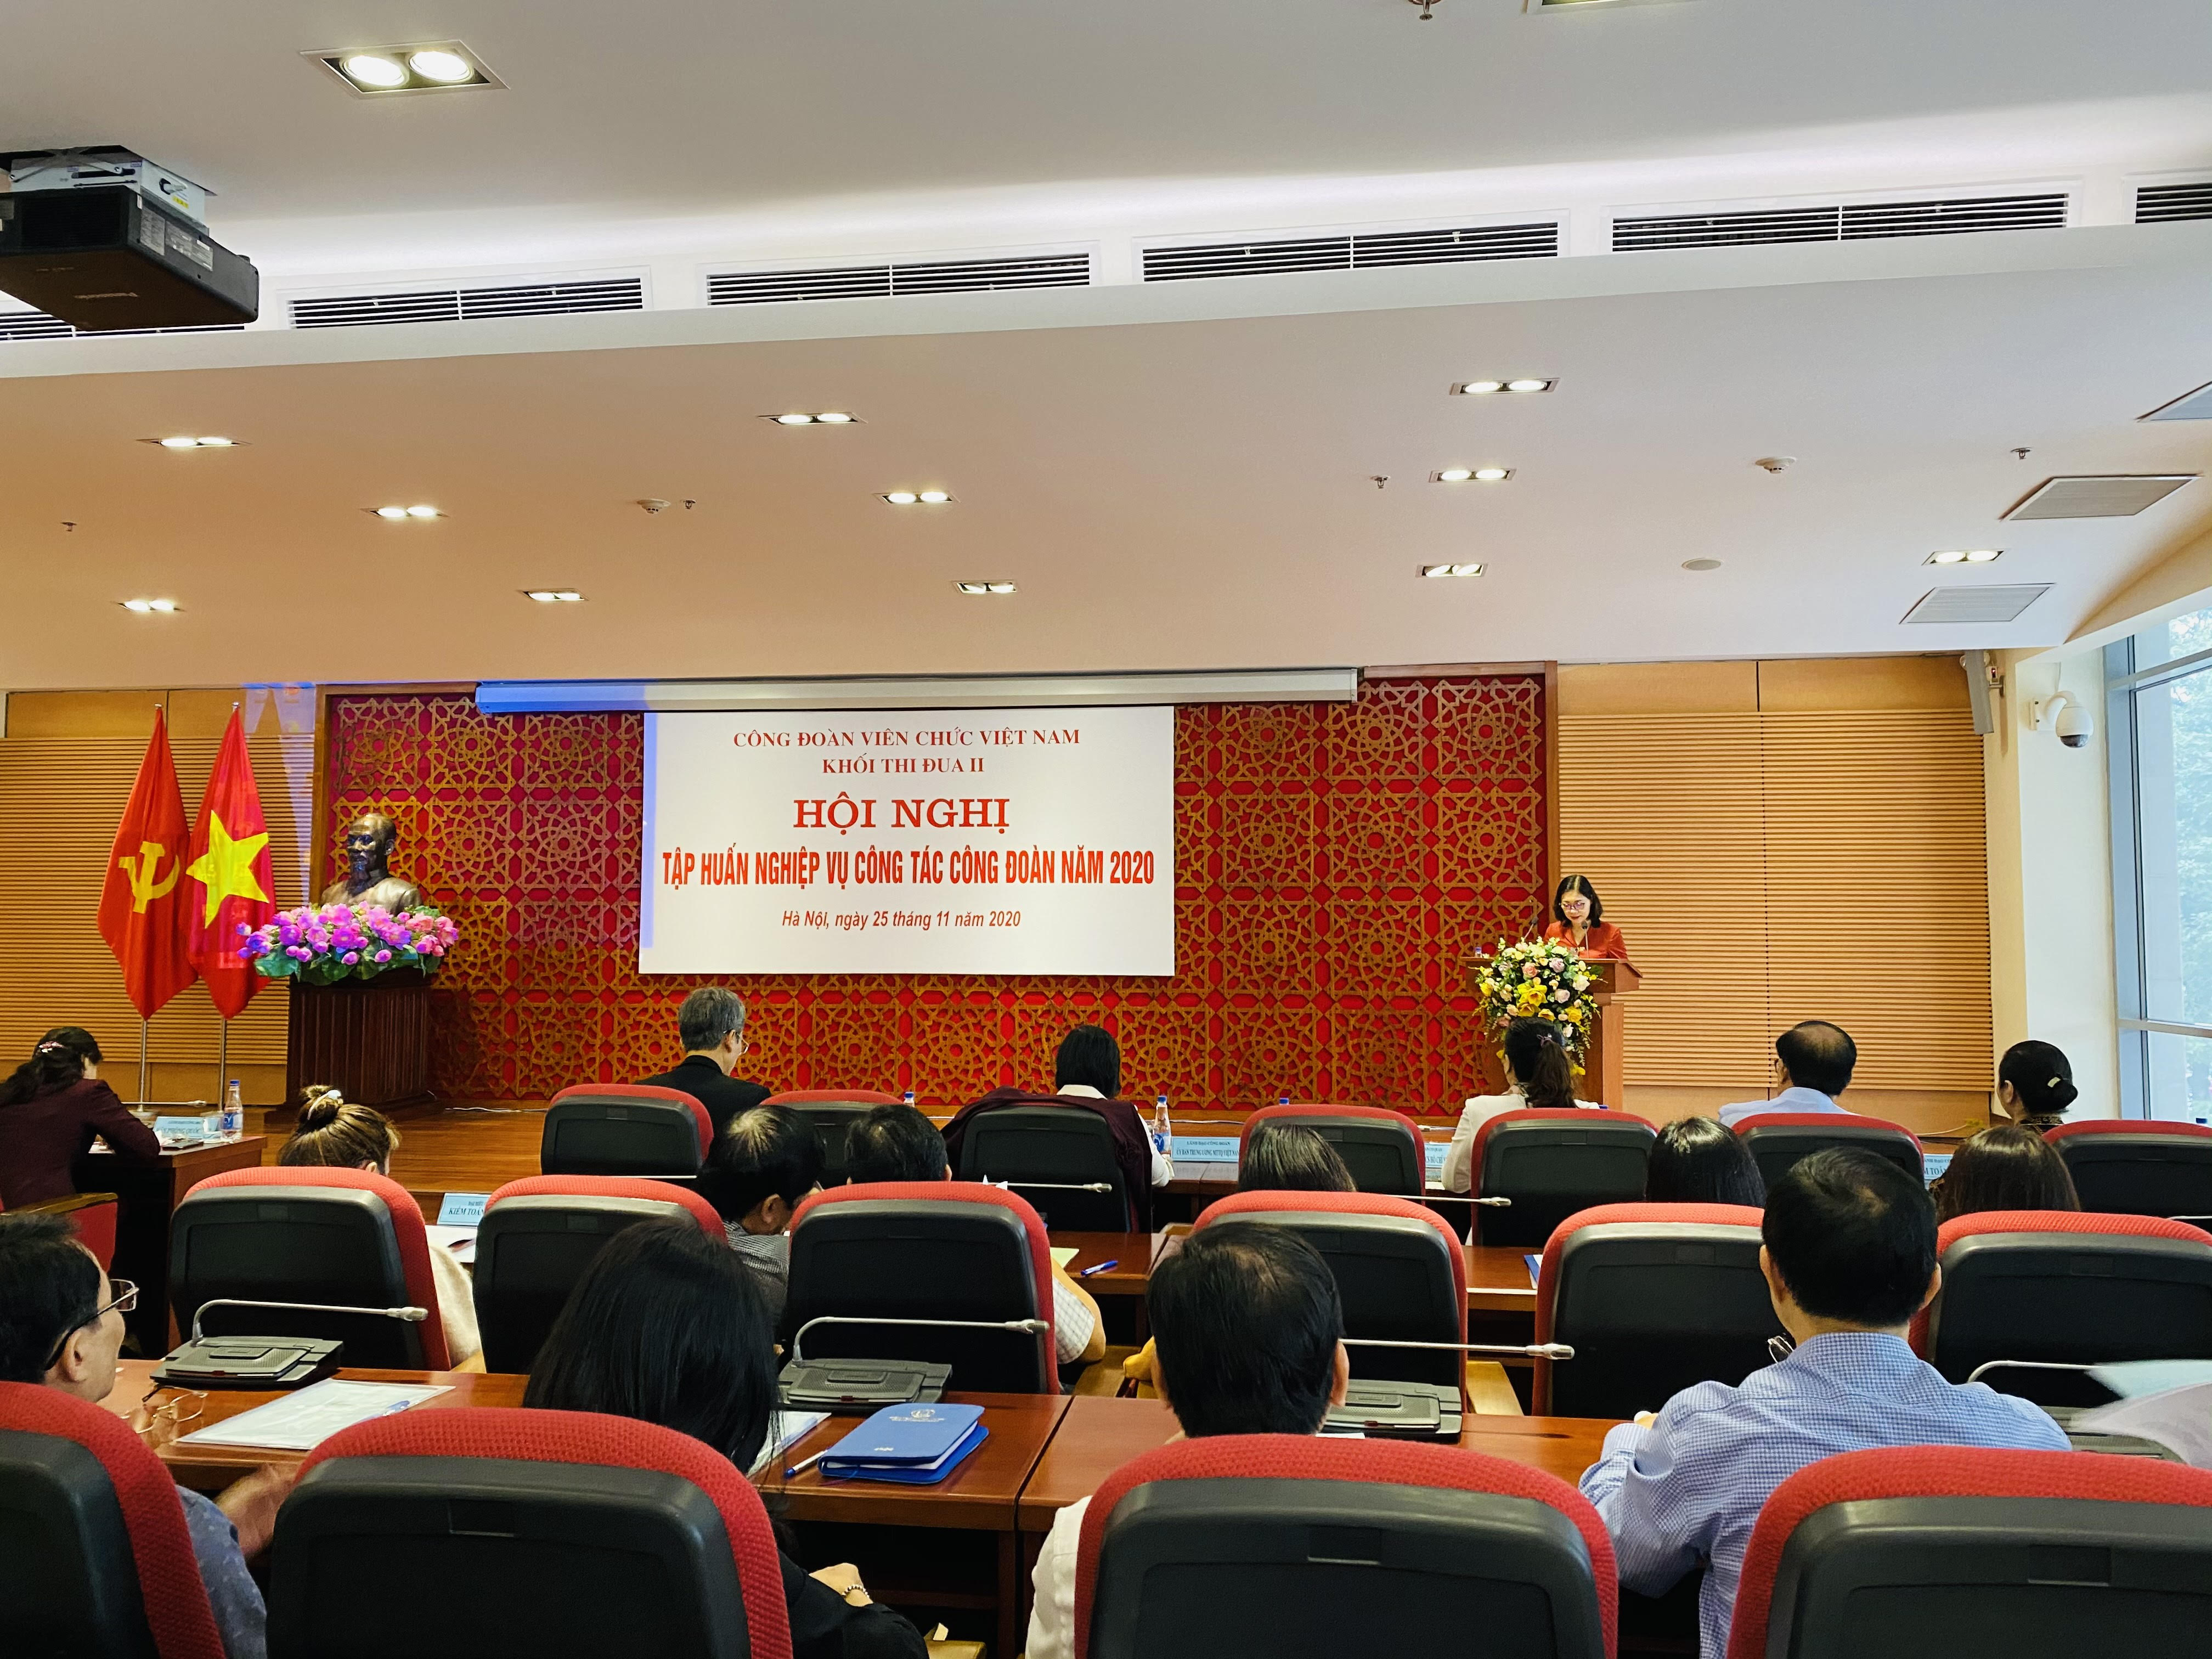 Phó chủ tịch Thường trực Công đoàn Viên chức Việt Nam Nguyễn Giang Tuệ Minh giới thiệu Điều lệ Công đoàn 